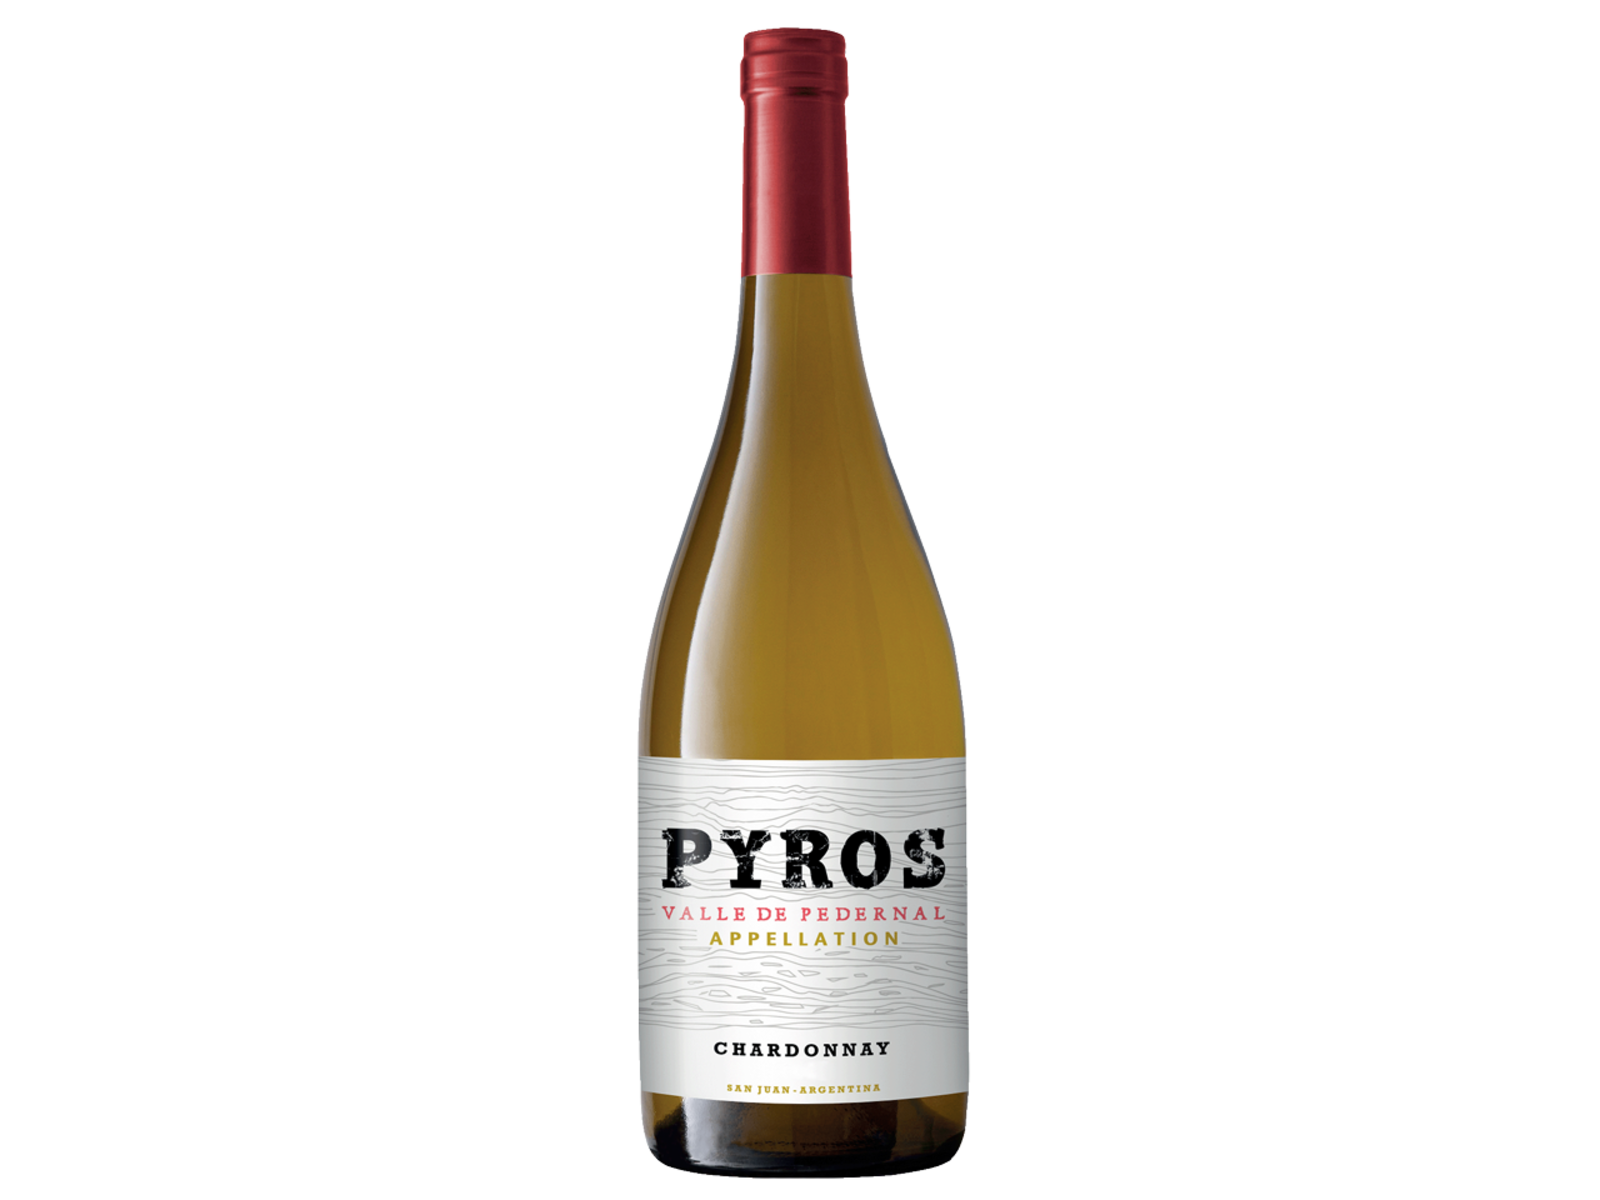 Pyros Pyros Appellation Chardonnay